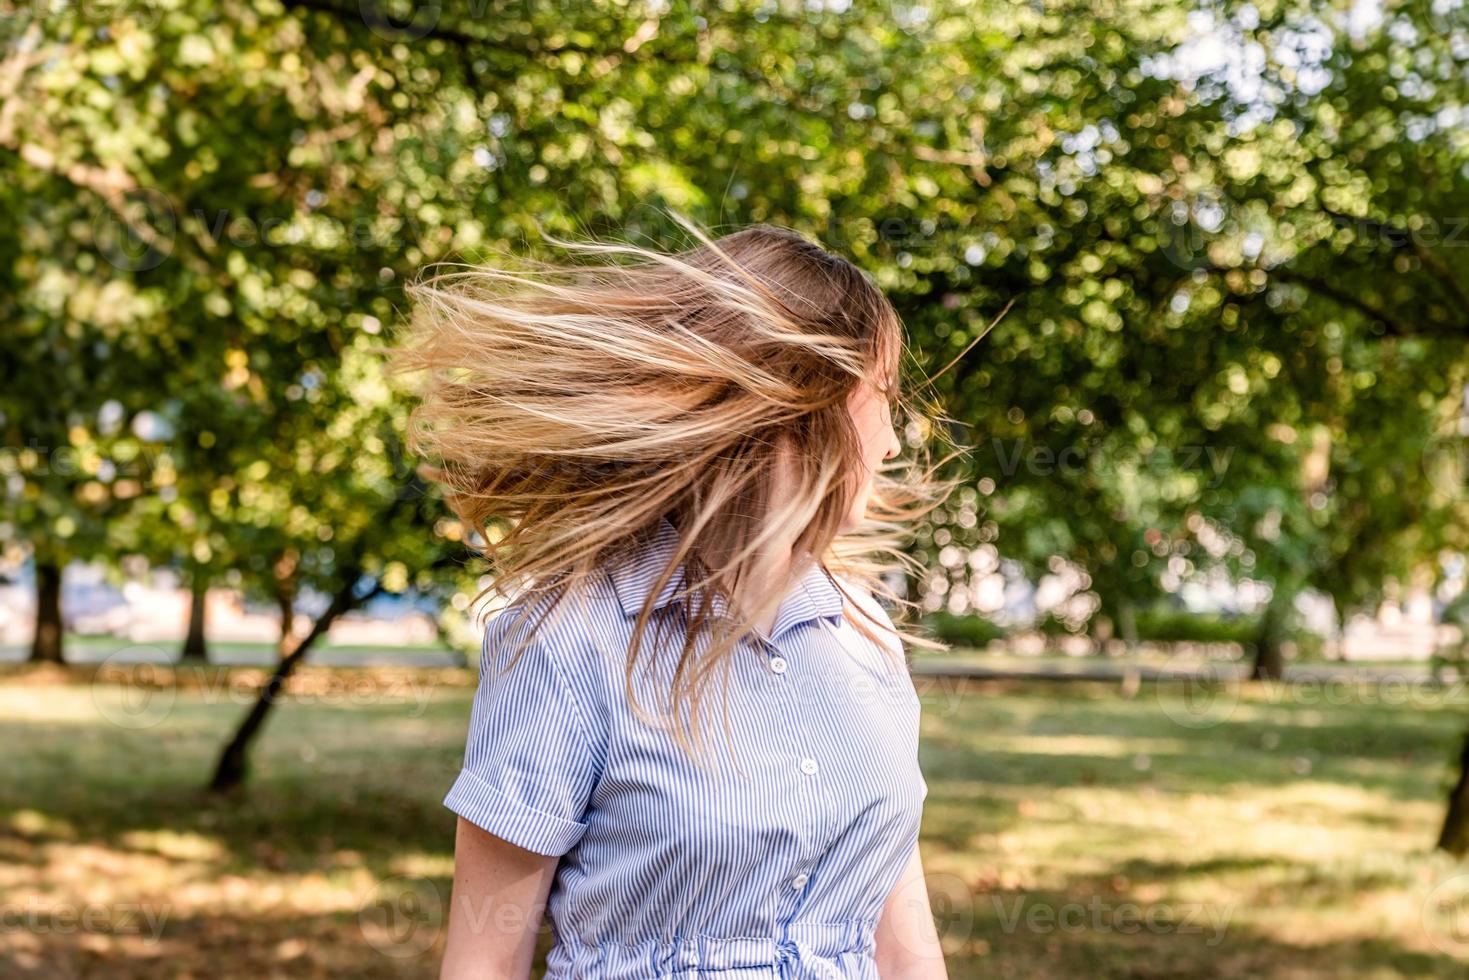 ung kaukasisk blond kvinna i en blå avskalad sommarklänning som skakar håret i parken utomhus på en solig dag foto